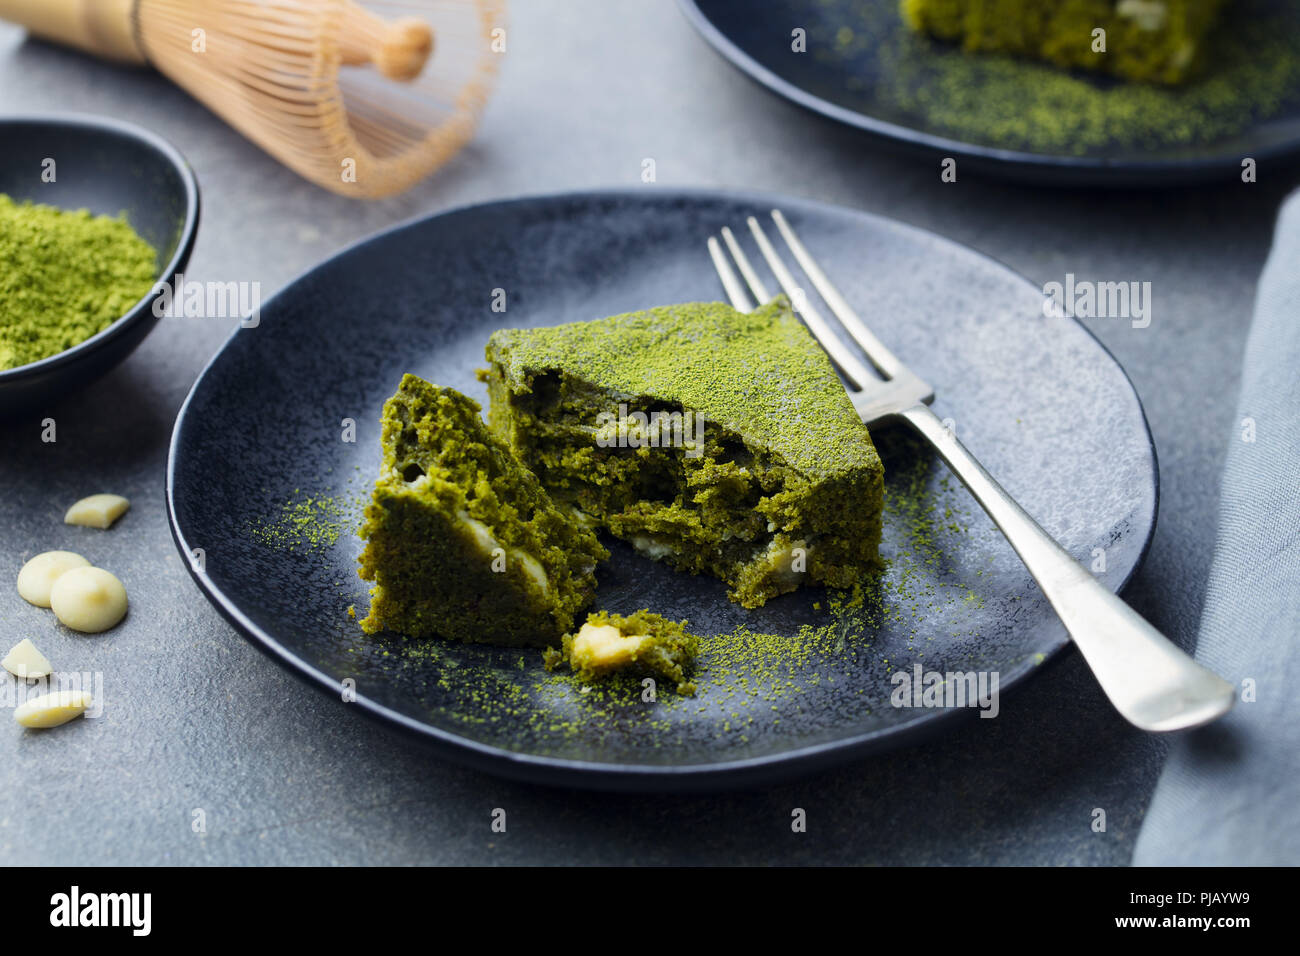 Thé vert matcha cake, bars, brownie au chocolat blanc sur une assiette. Fond gris. Banque D'Images